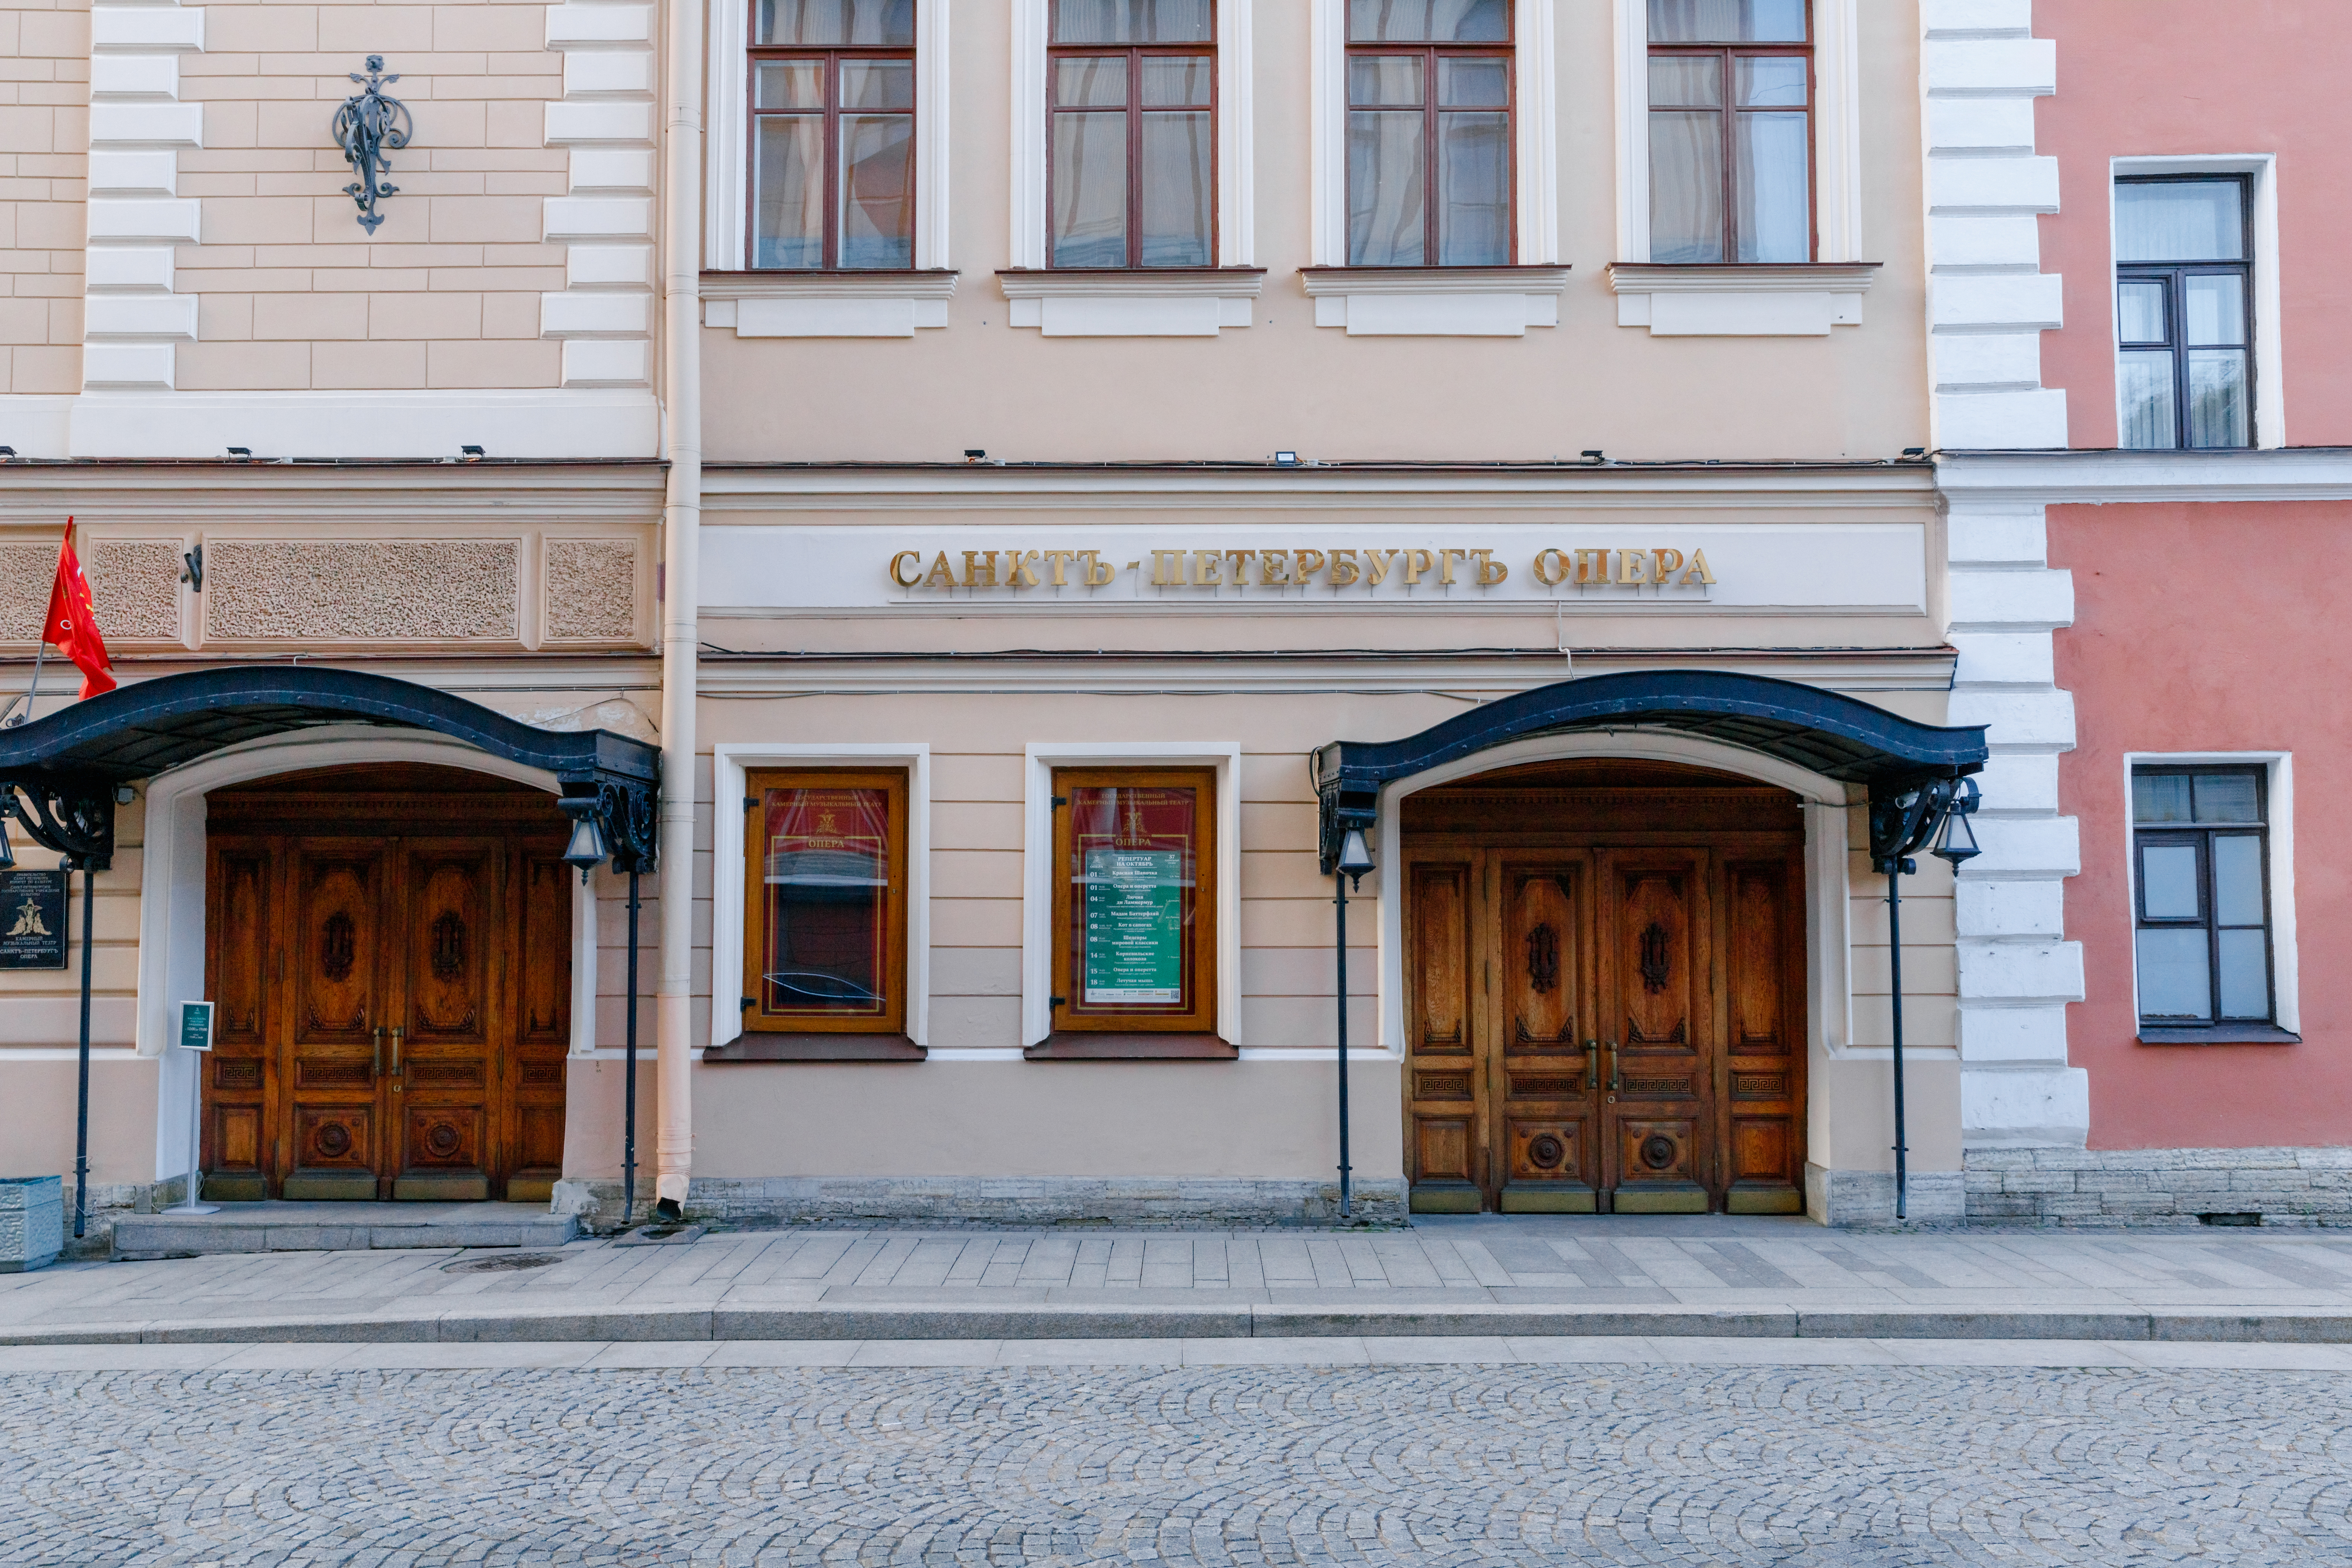 State Chamber Music Theatre ‘Saint Petersburg Opera’